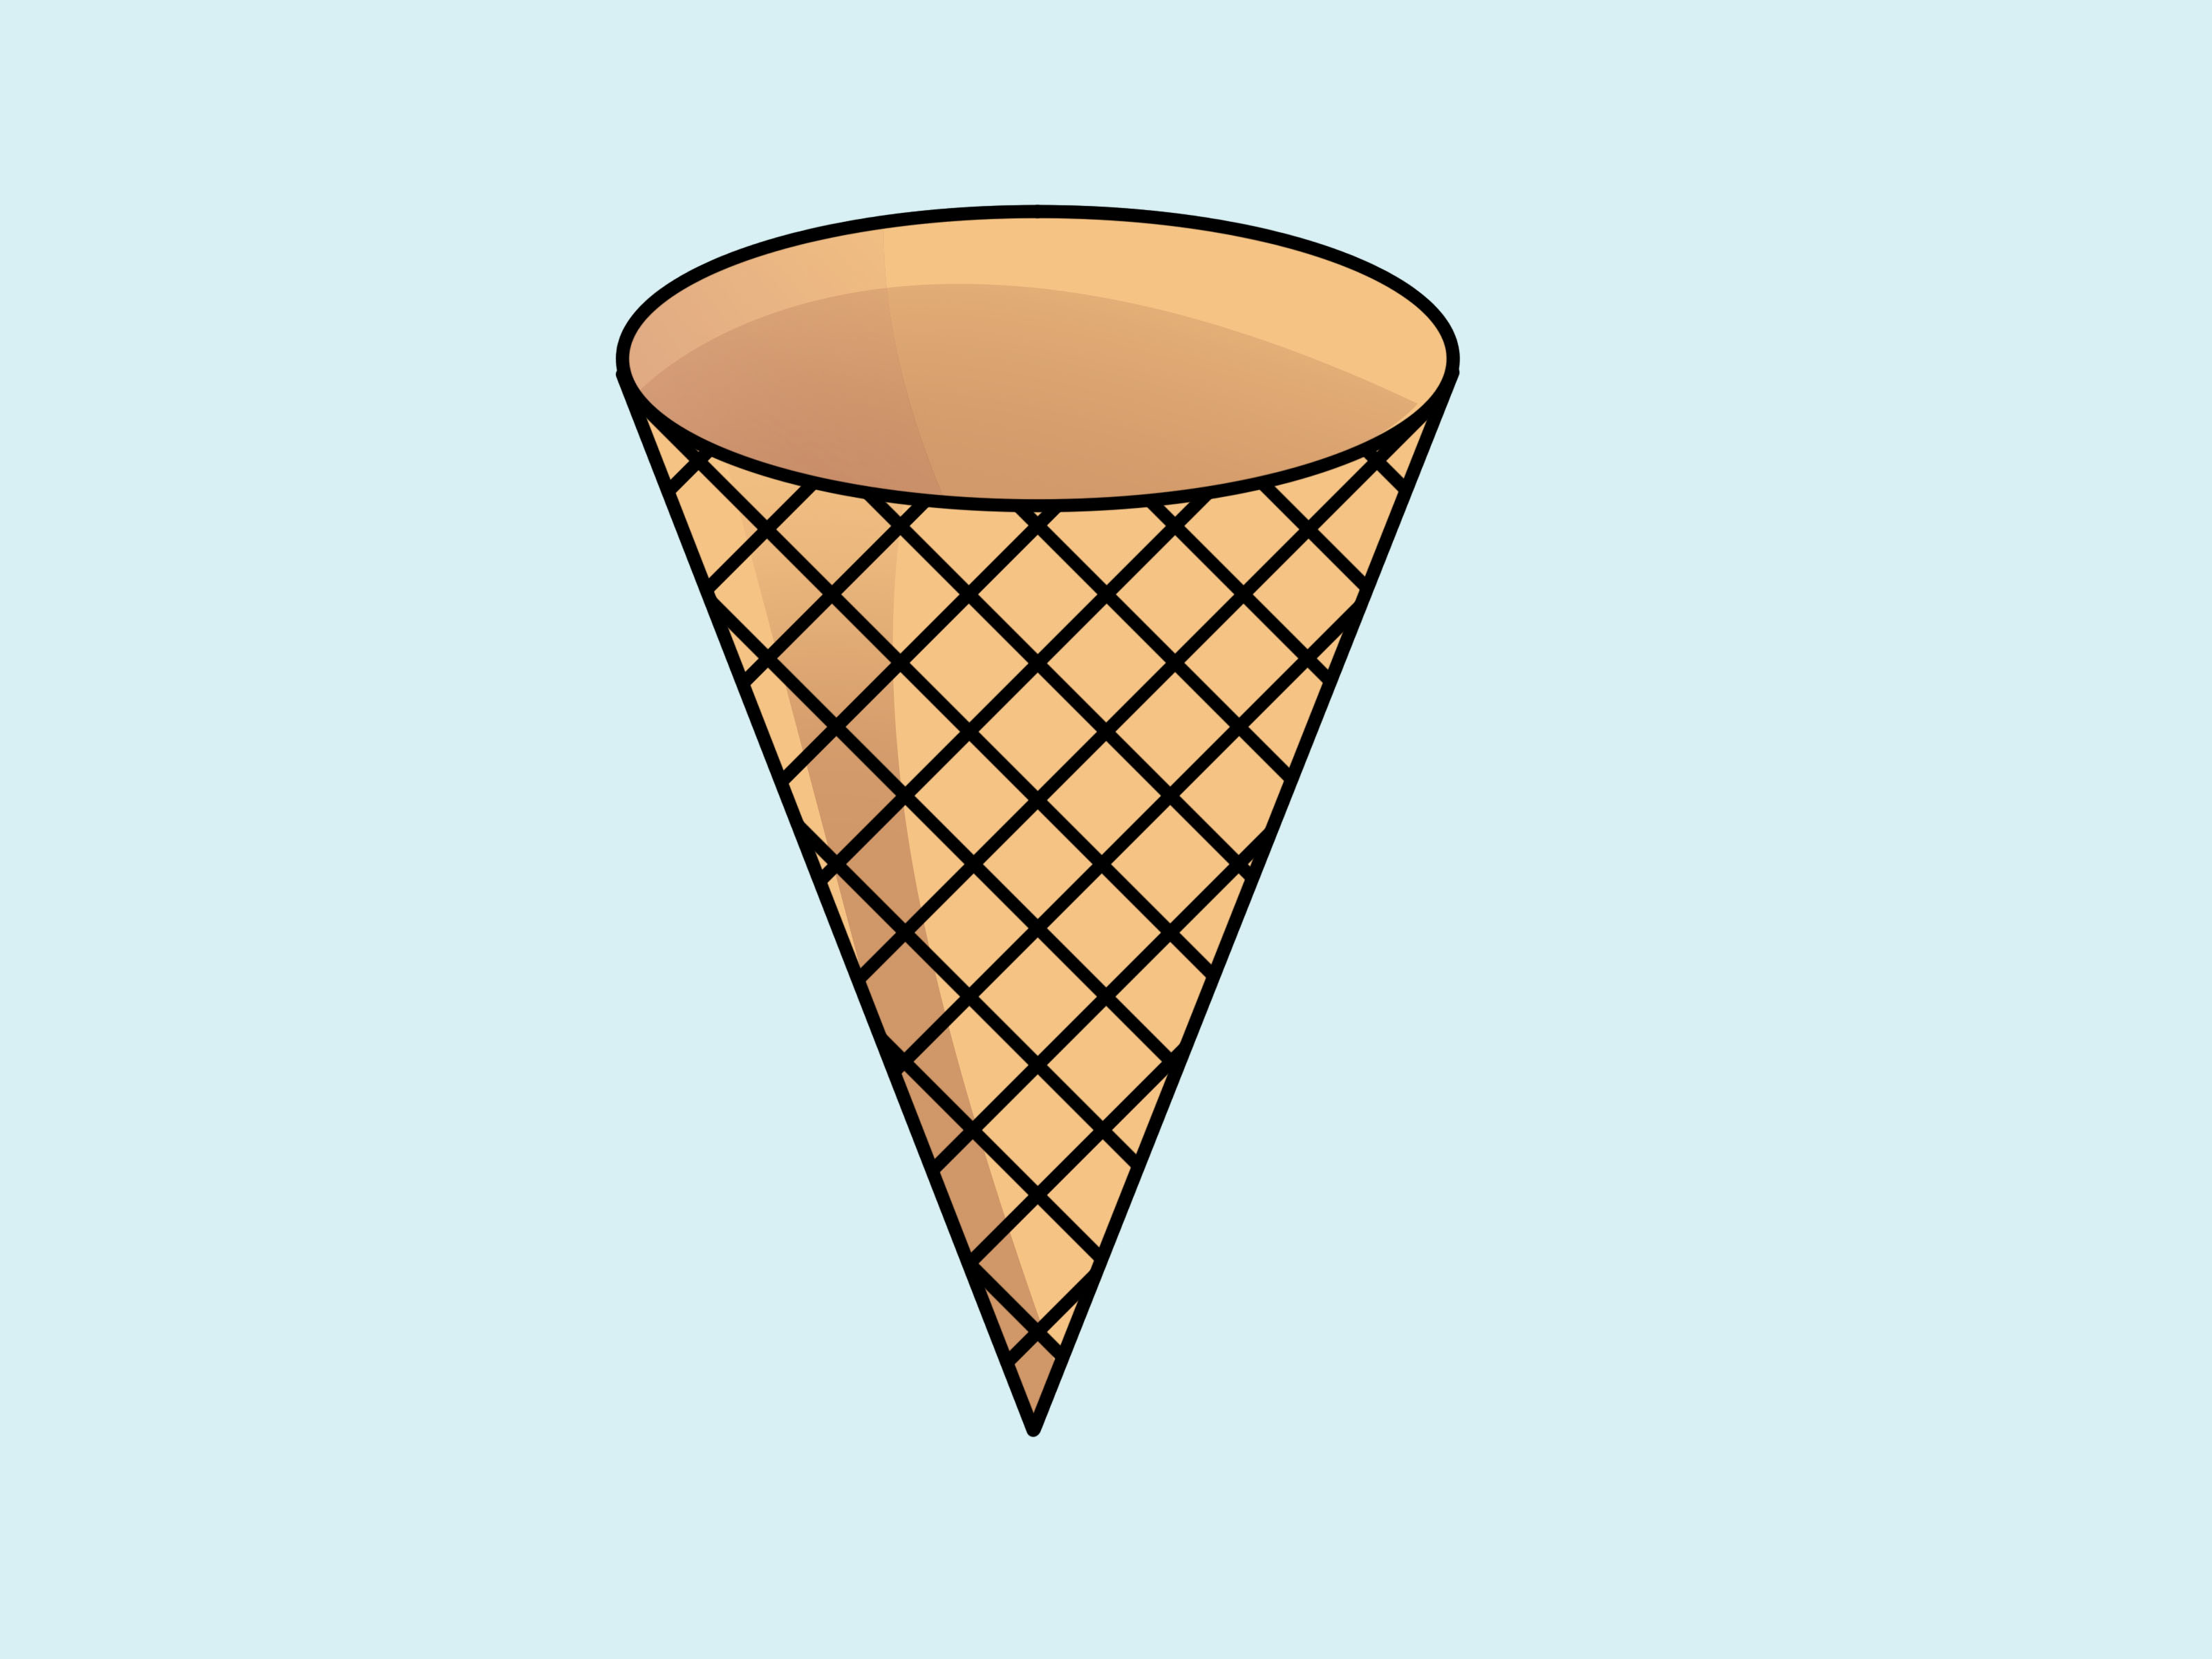 Images Of Ice Cream Cones